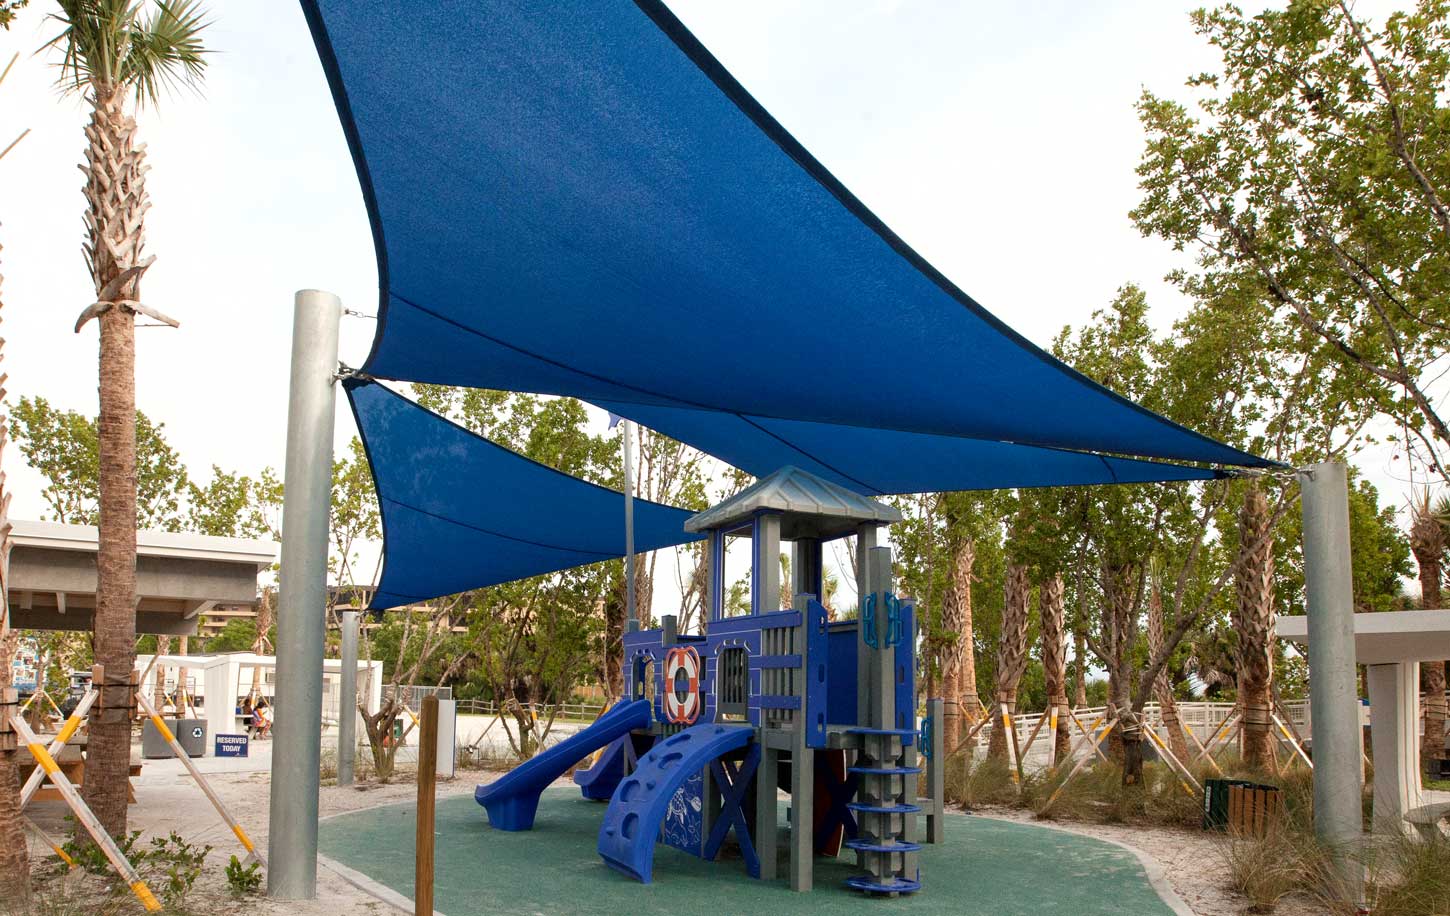 Playground Equipment with shade